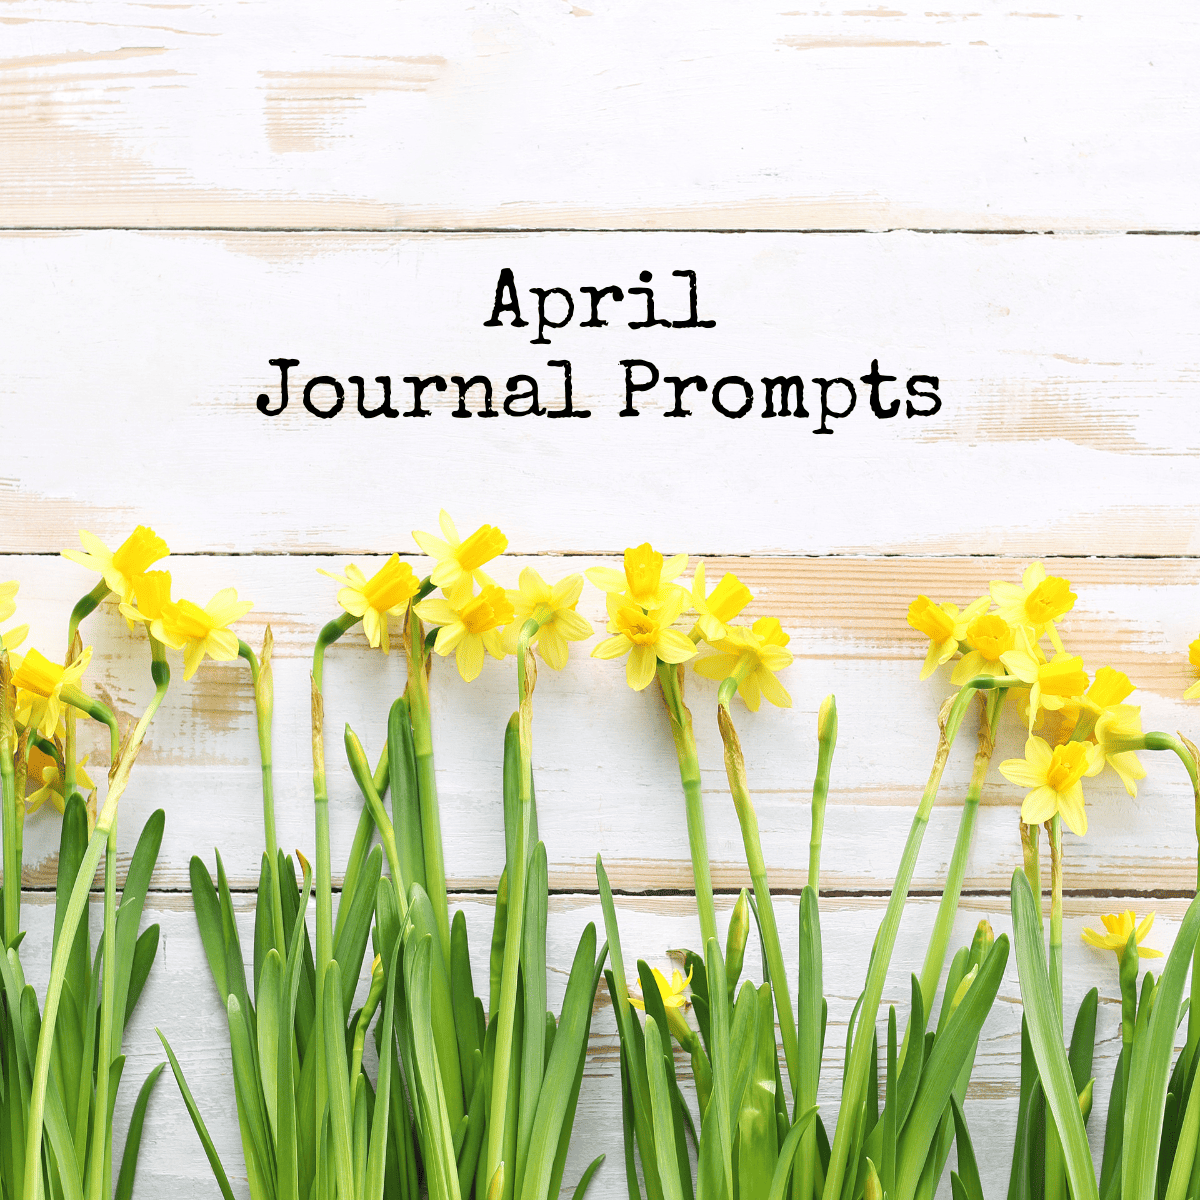 april journal prompt ideas